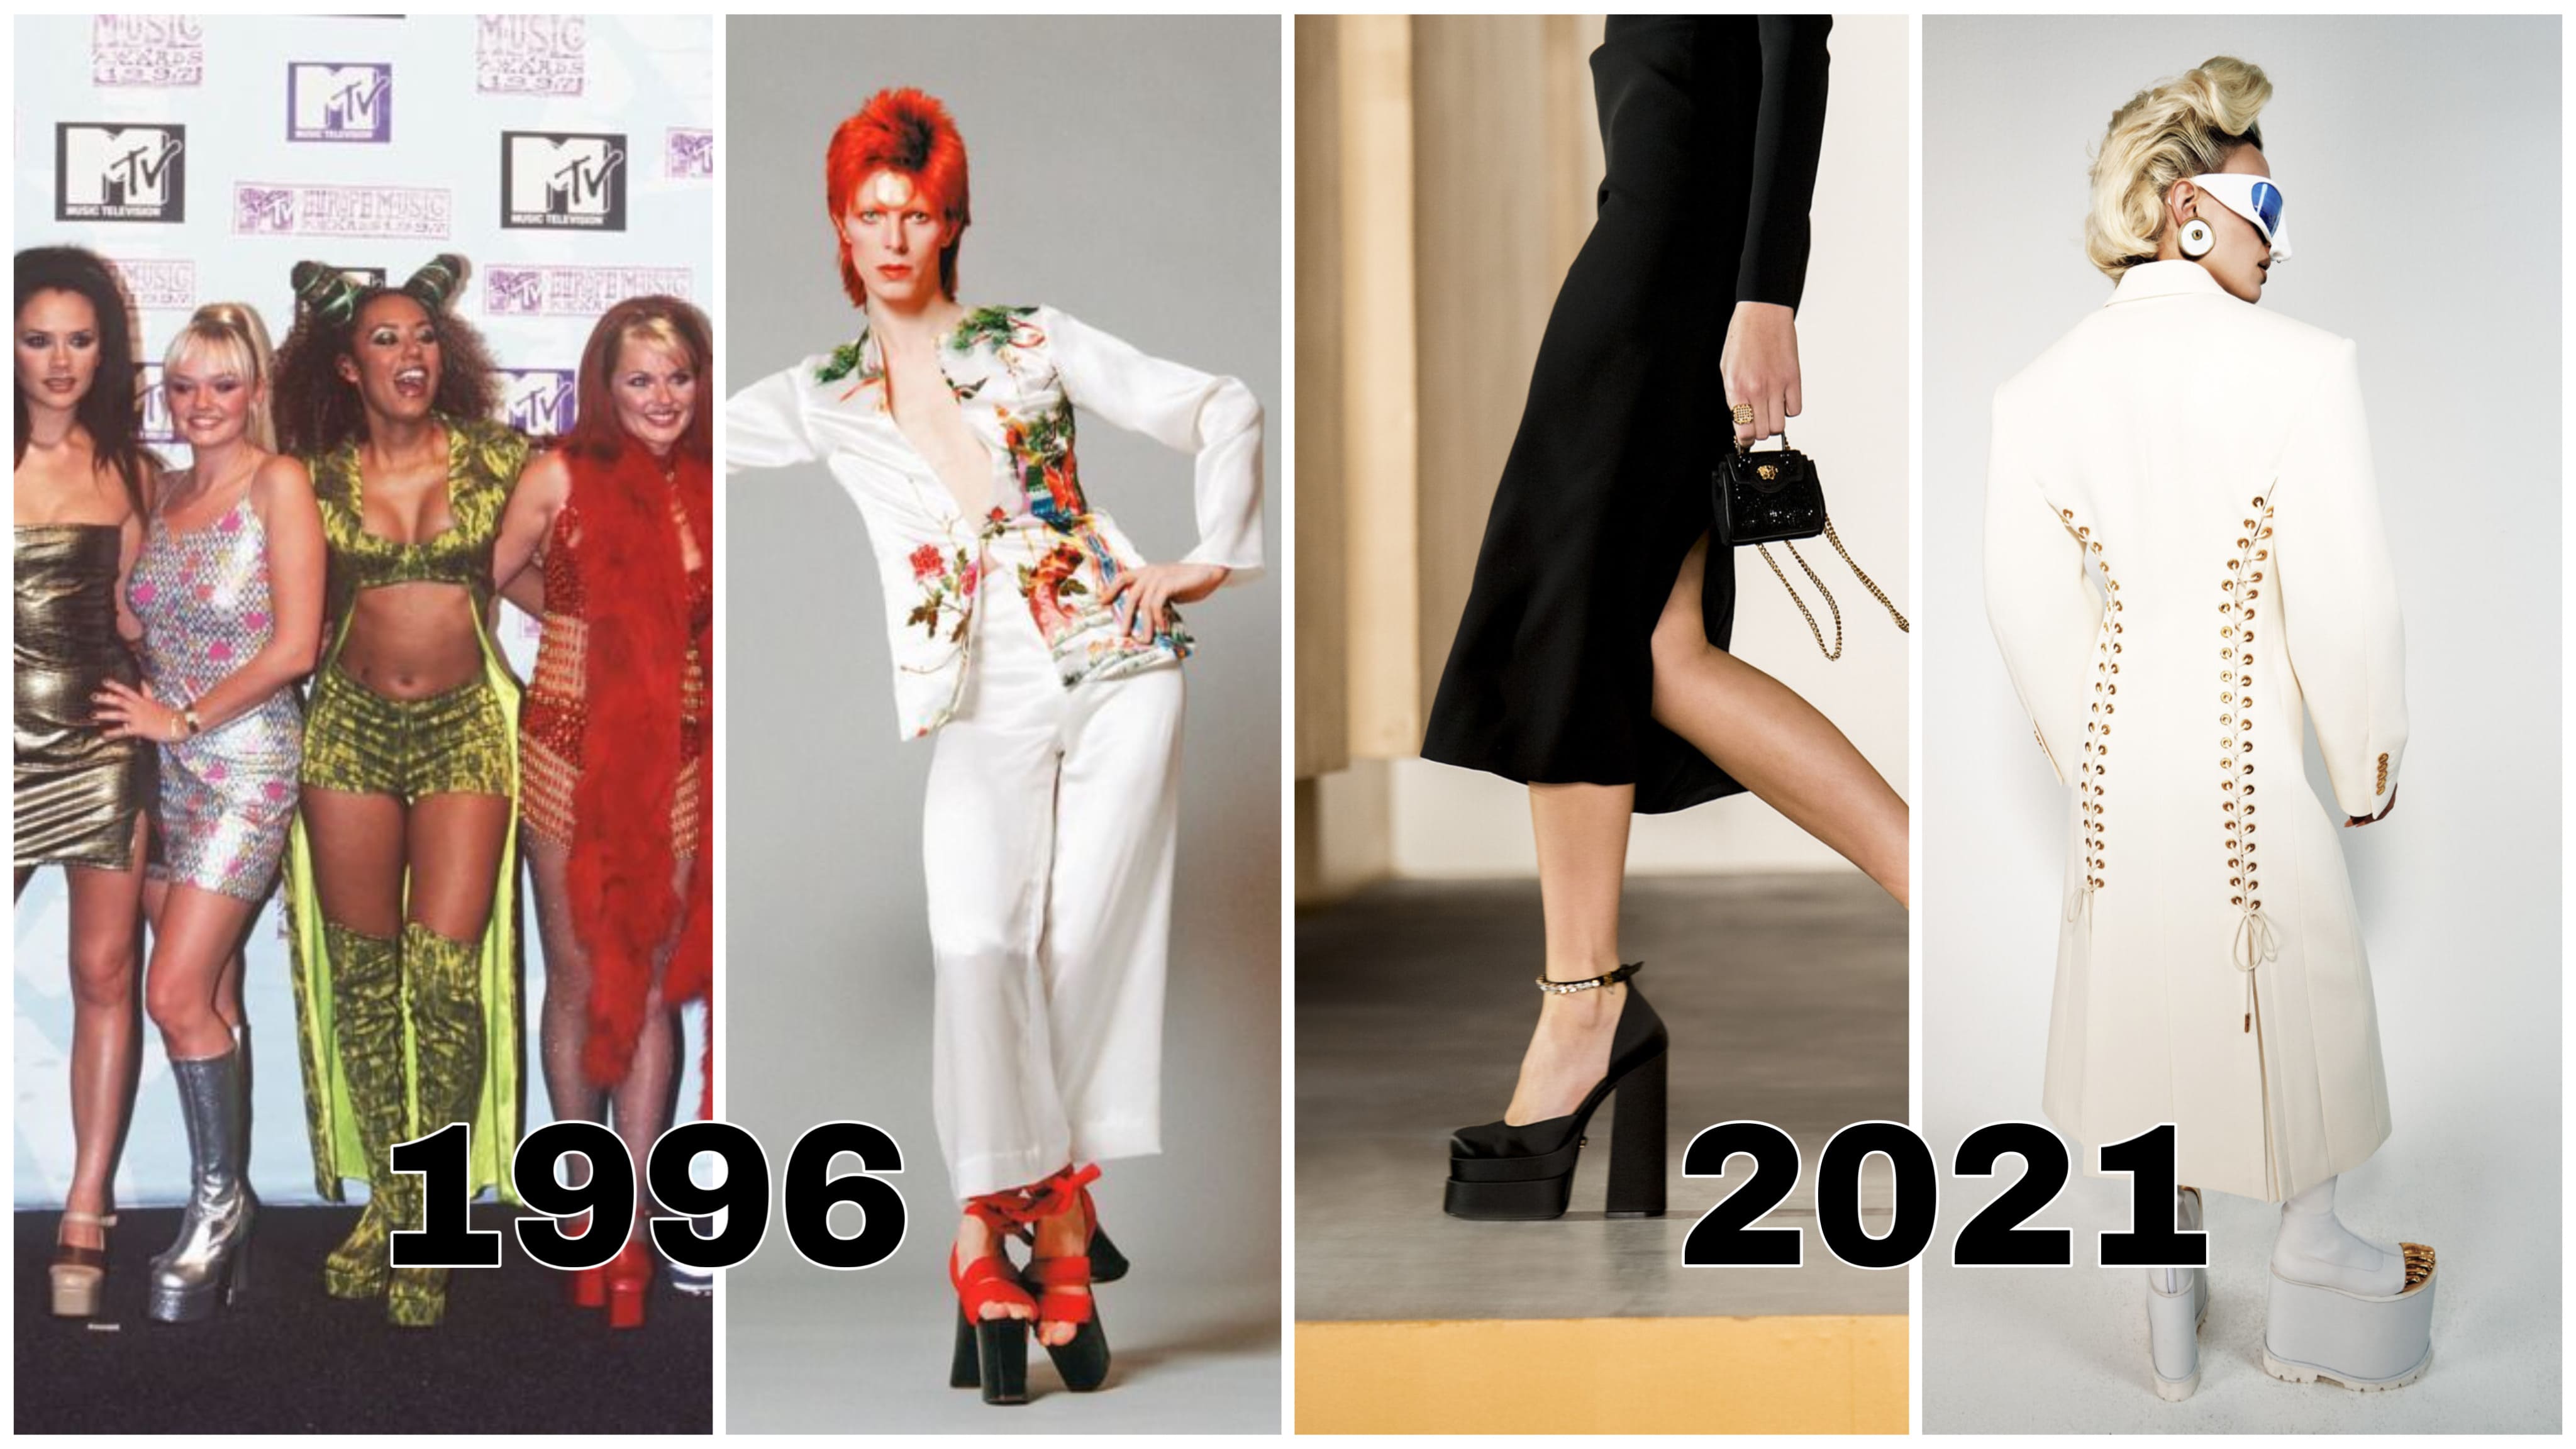 https://theblueprint.ru/fashion/trends/platforma-i-kabluk  |  https://vogue.ua/article/fashion/tendencii/neozhidannoe-vozvrashchenie-obuv-na-platforme-v-kollekciyah-osen-zima-2021-2022.html